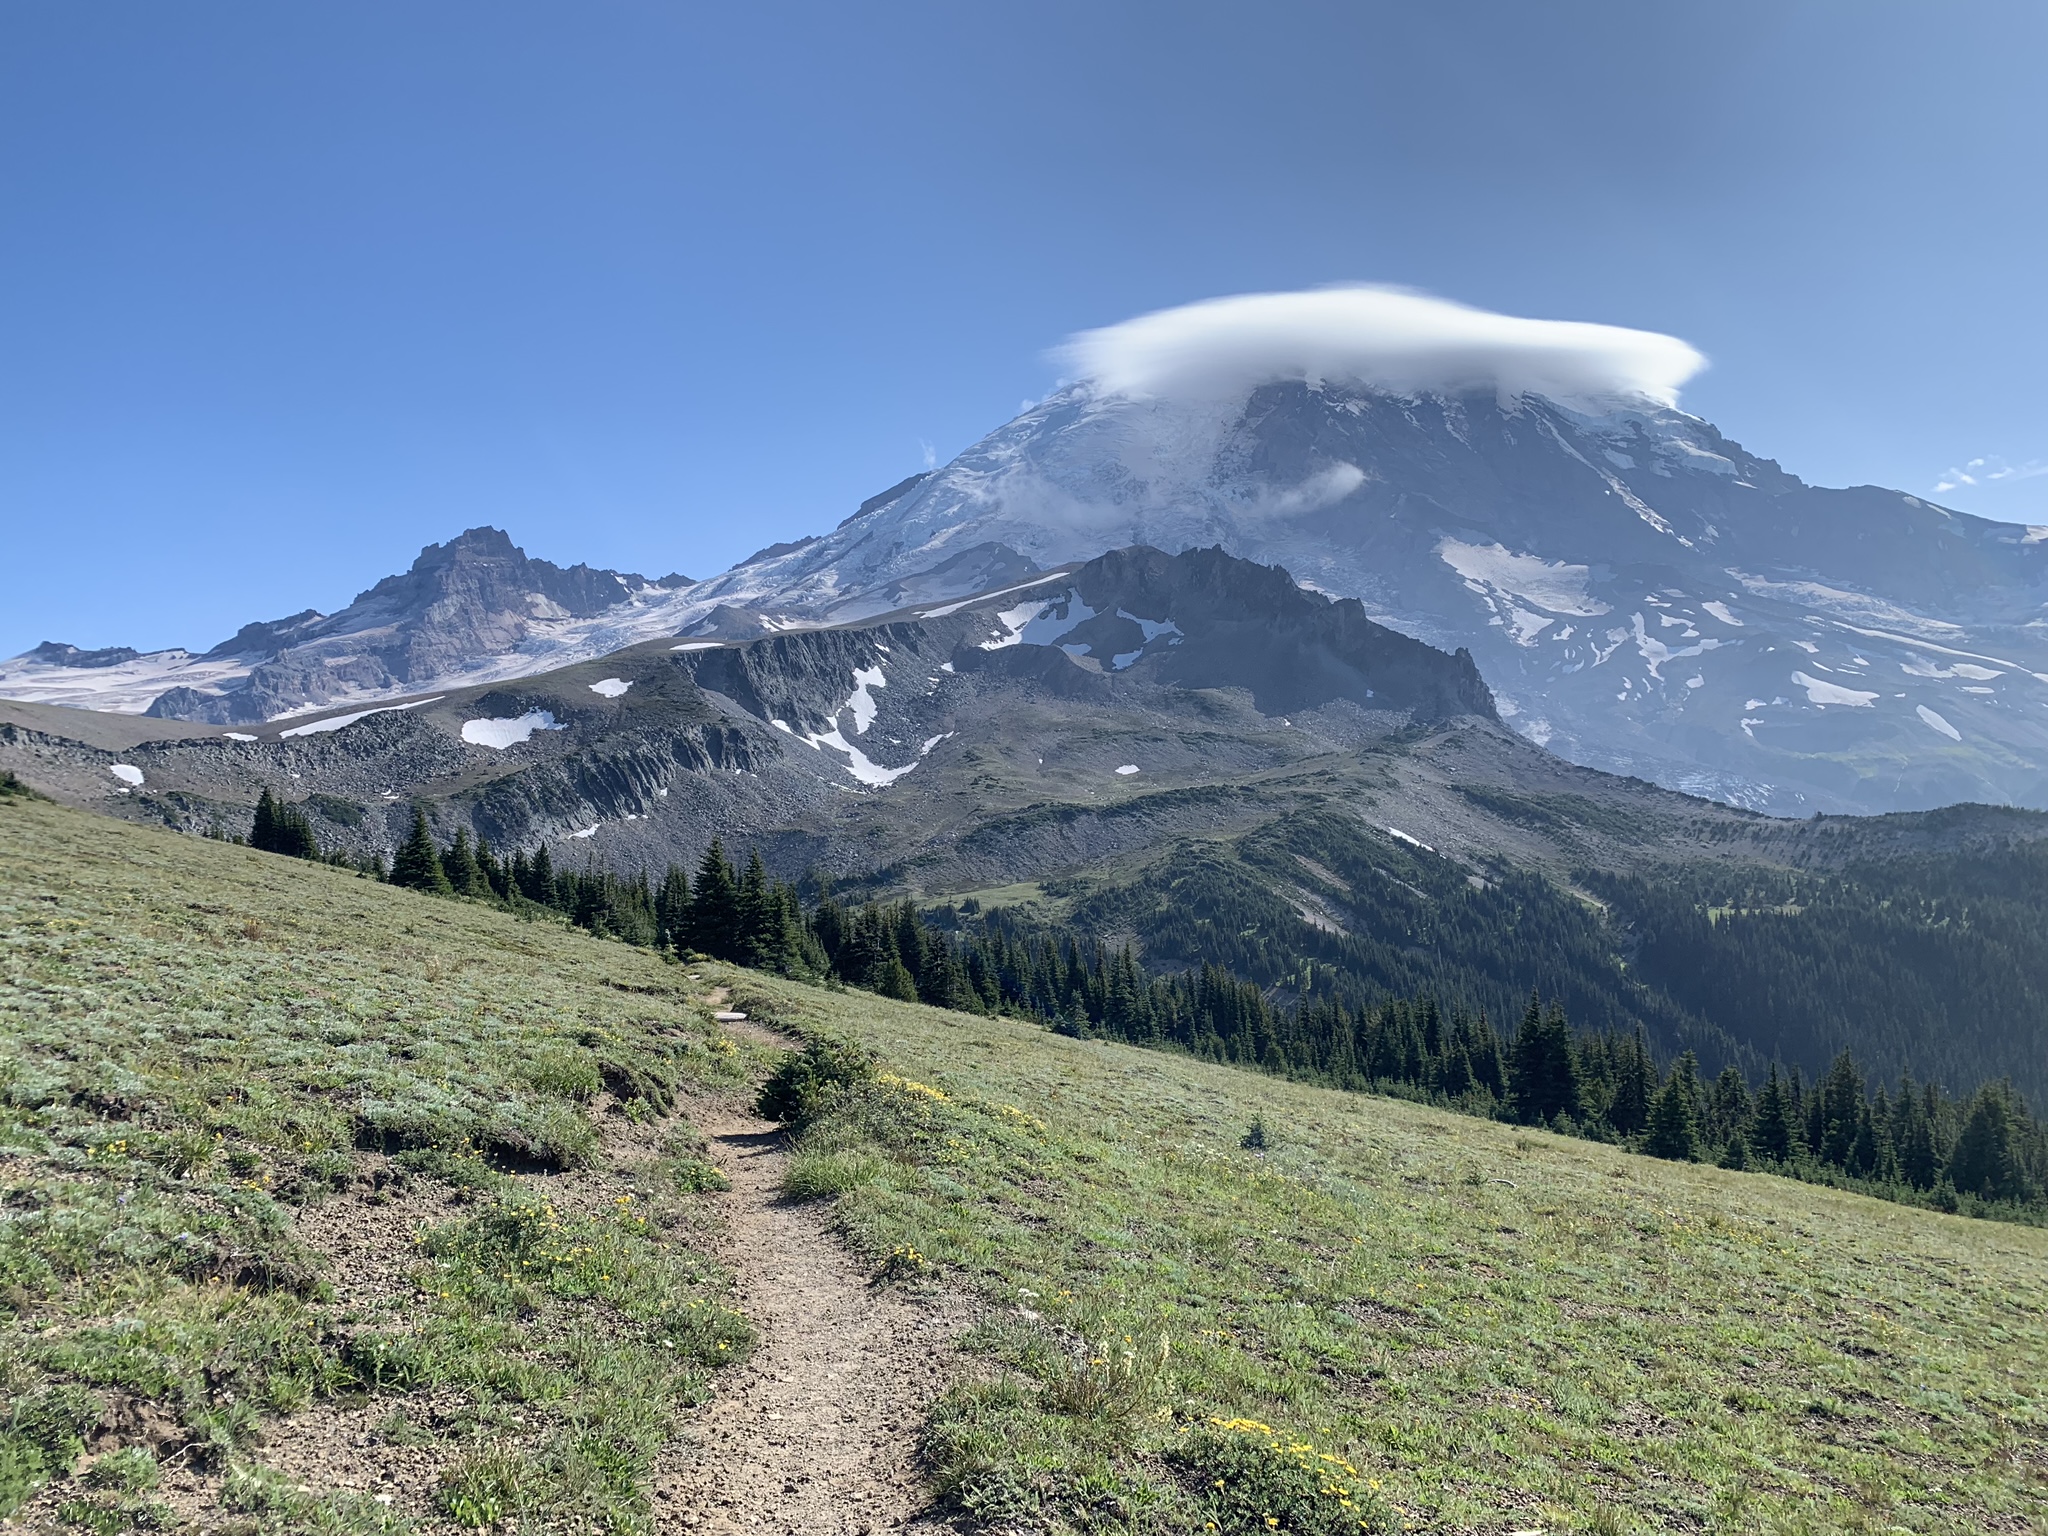 Wonderland trail stretches in front of Mt. Rainier